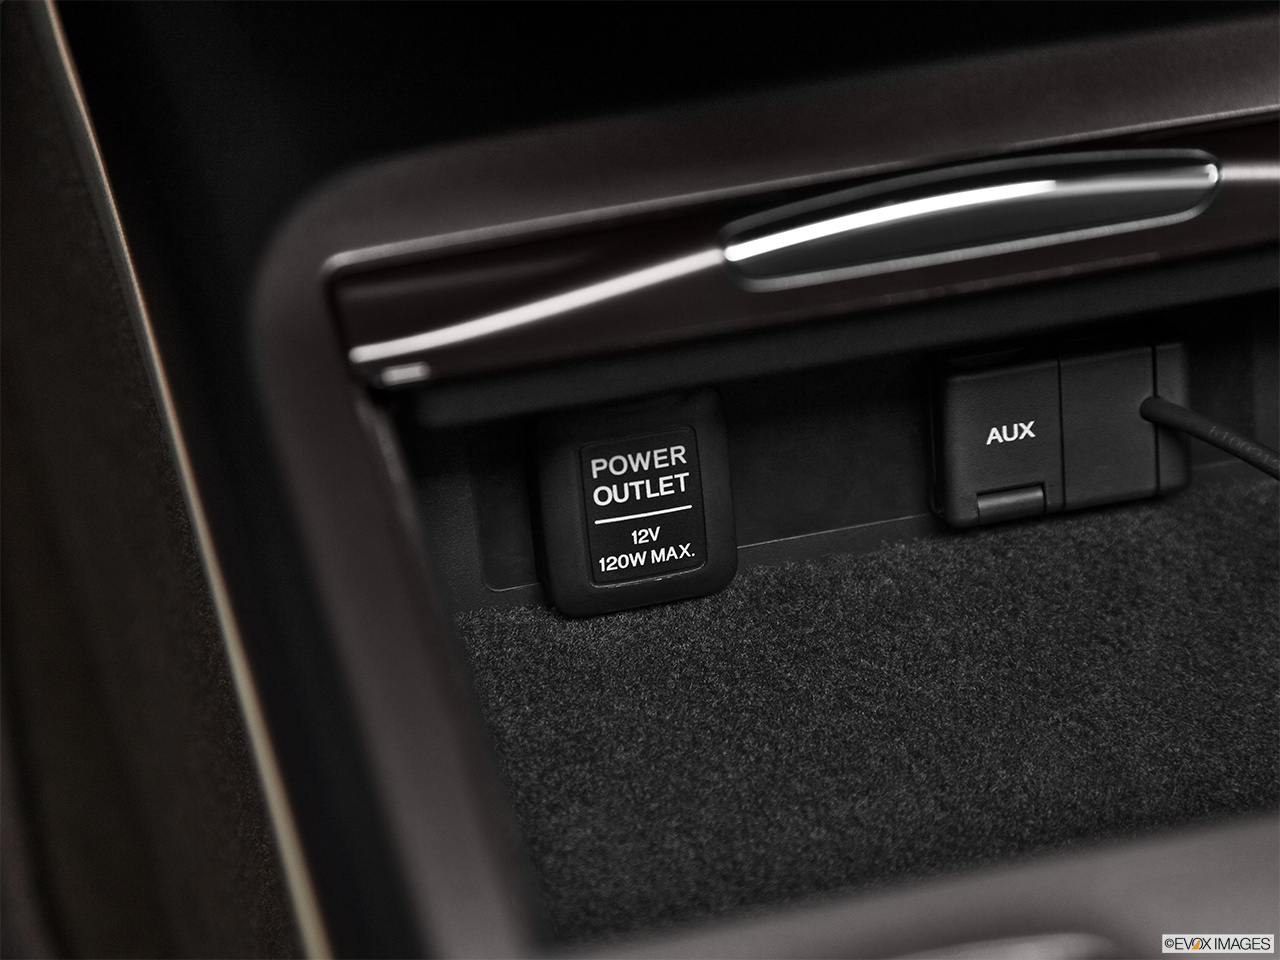 2013 Acura RDX AWD Main power point. 